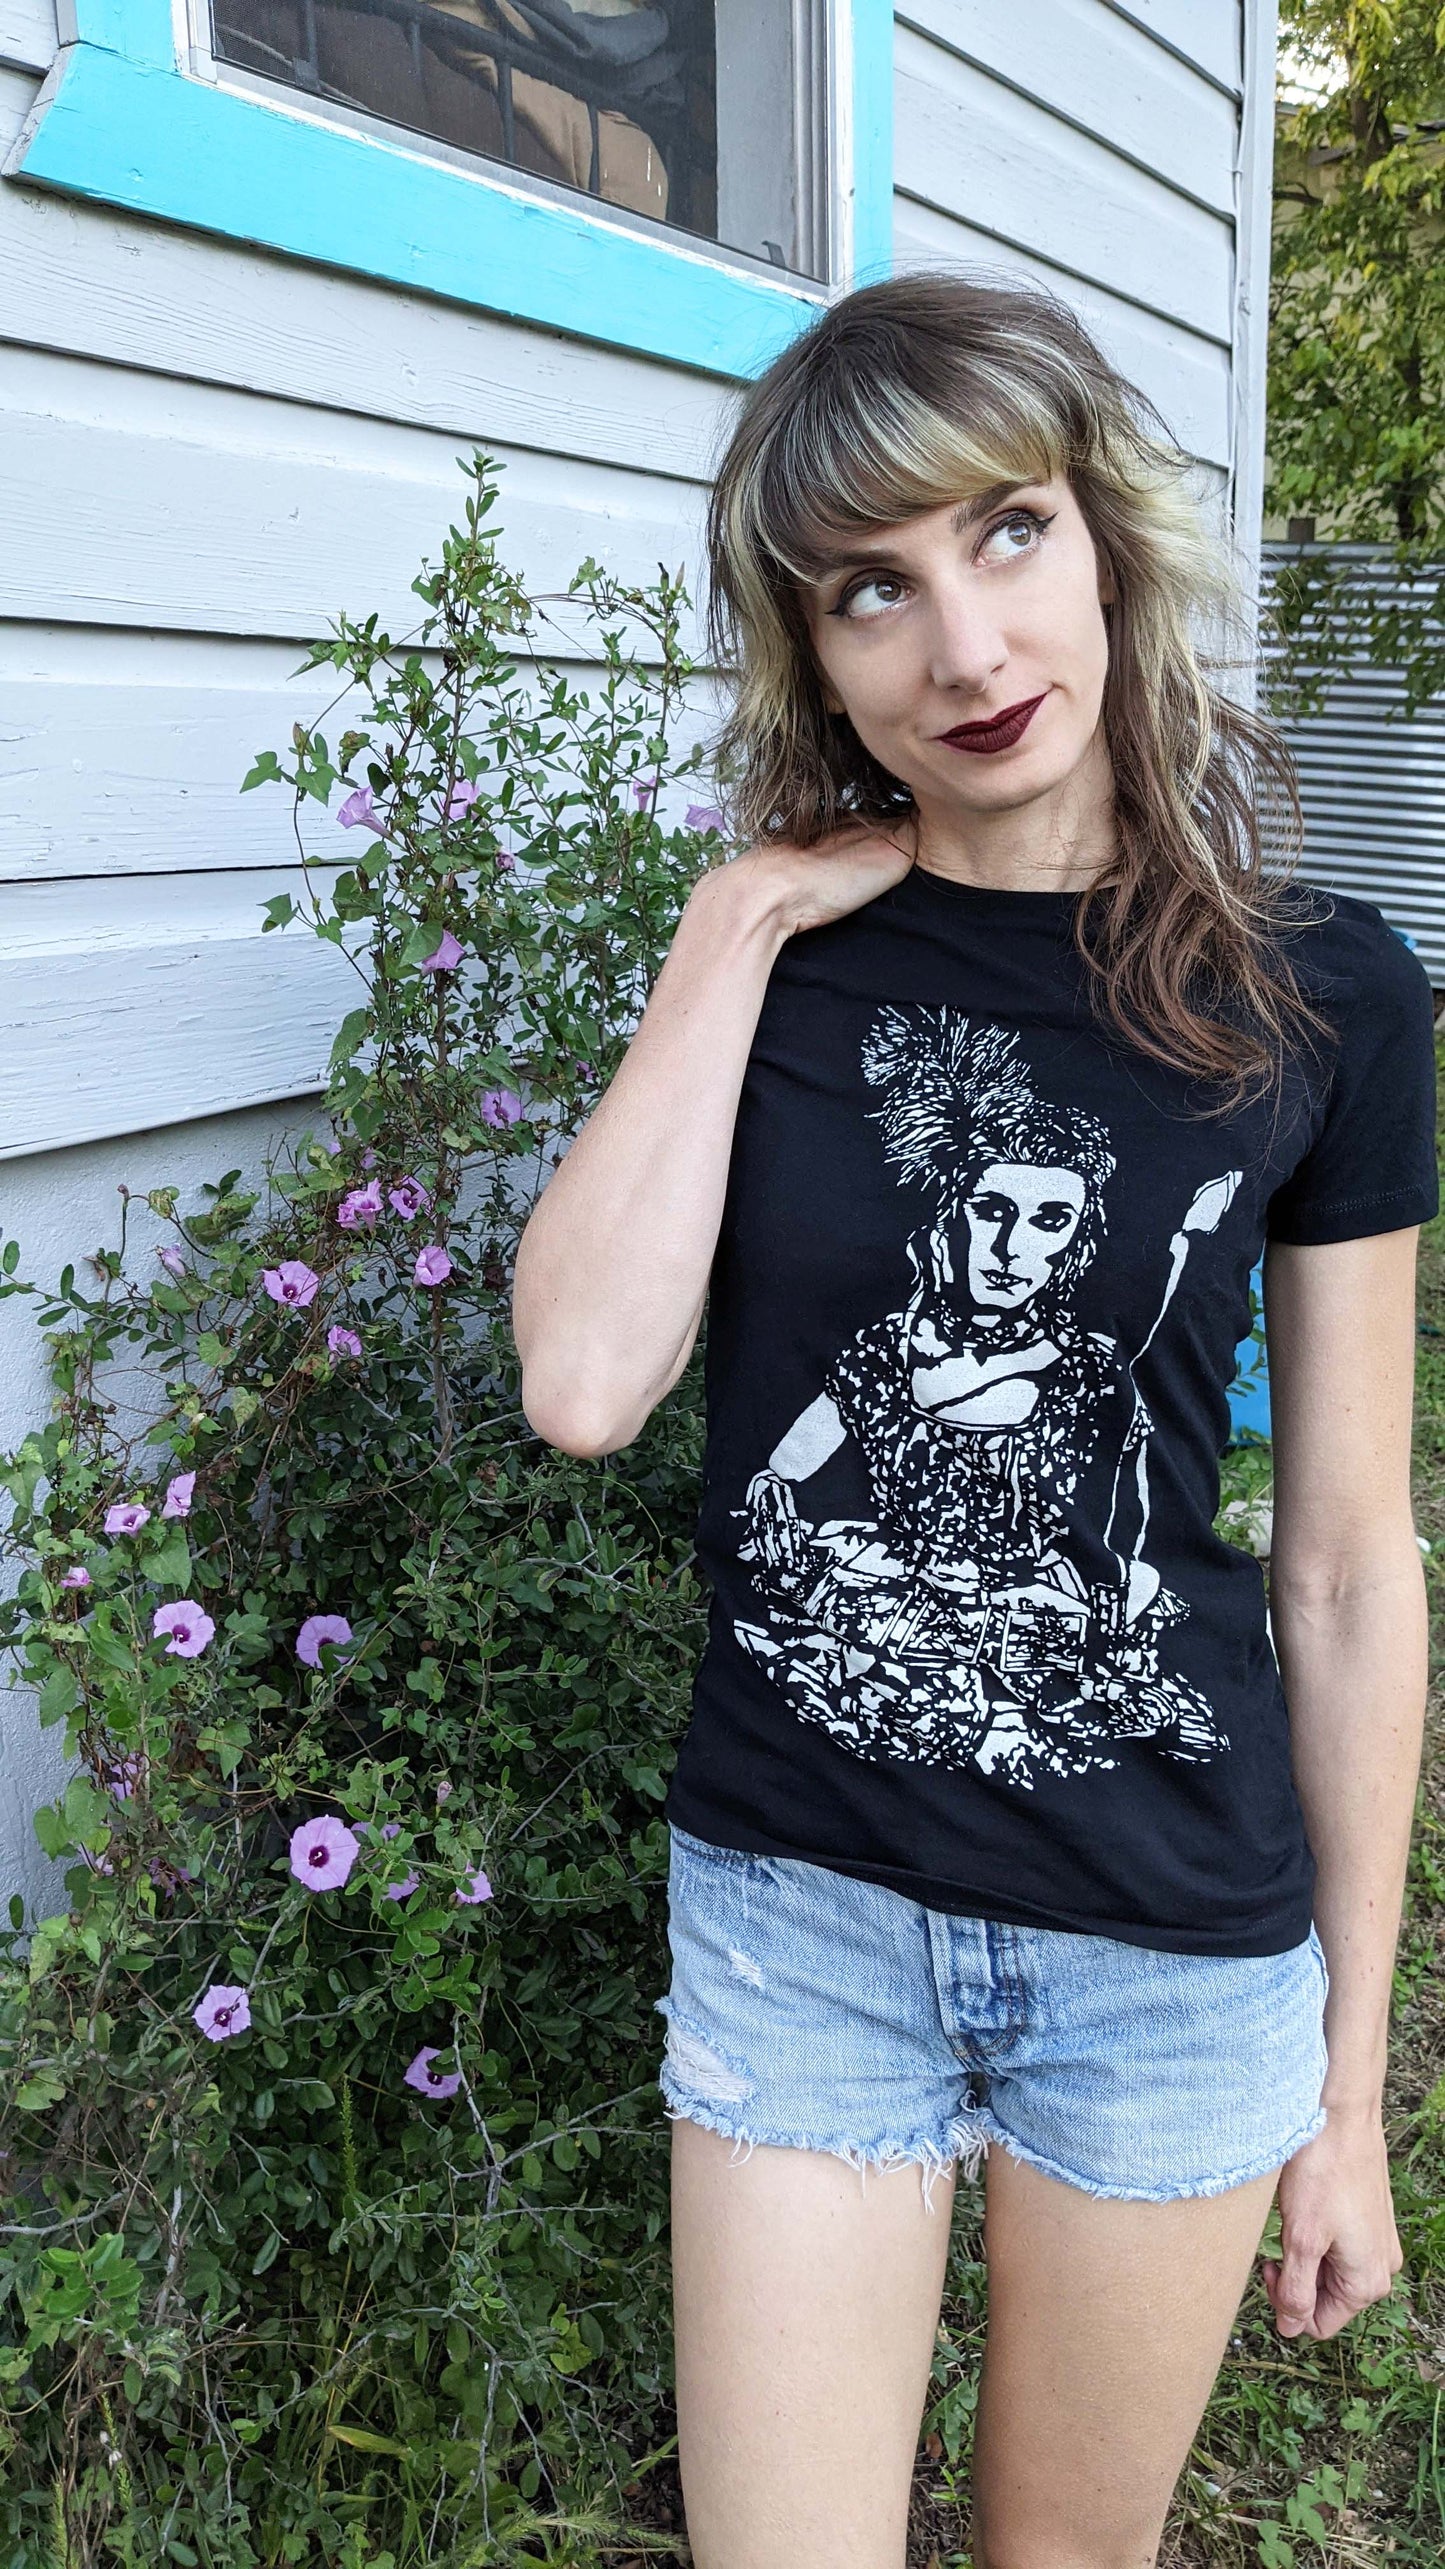 Tarot Reader - Women's Cut Black T-Shirt